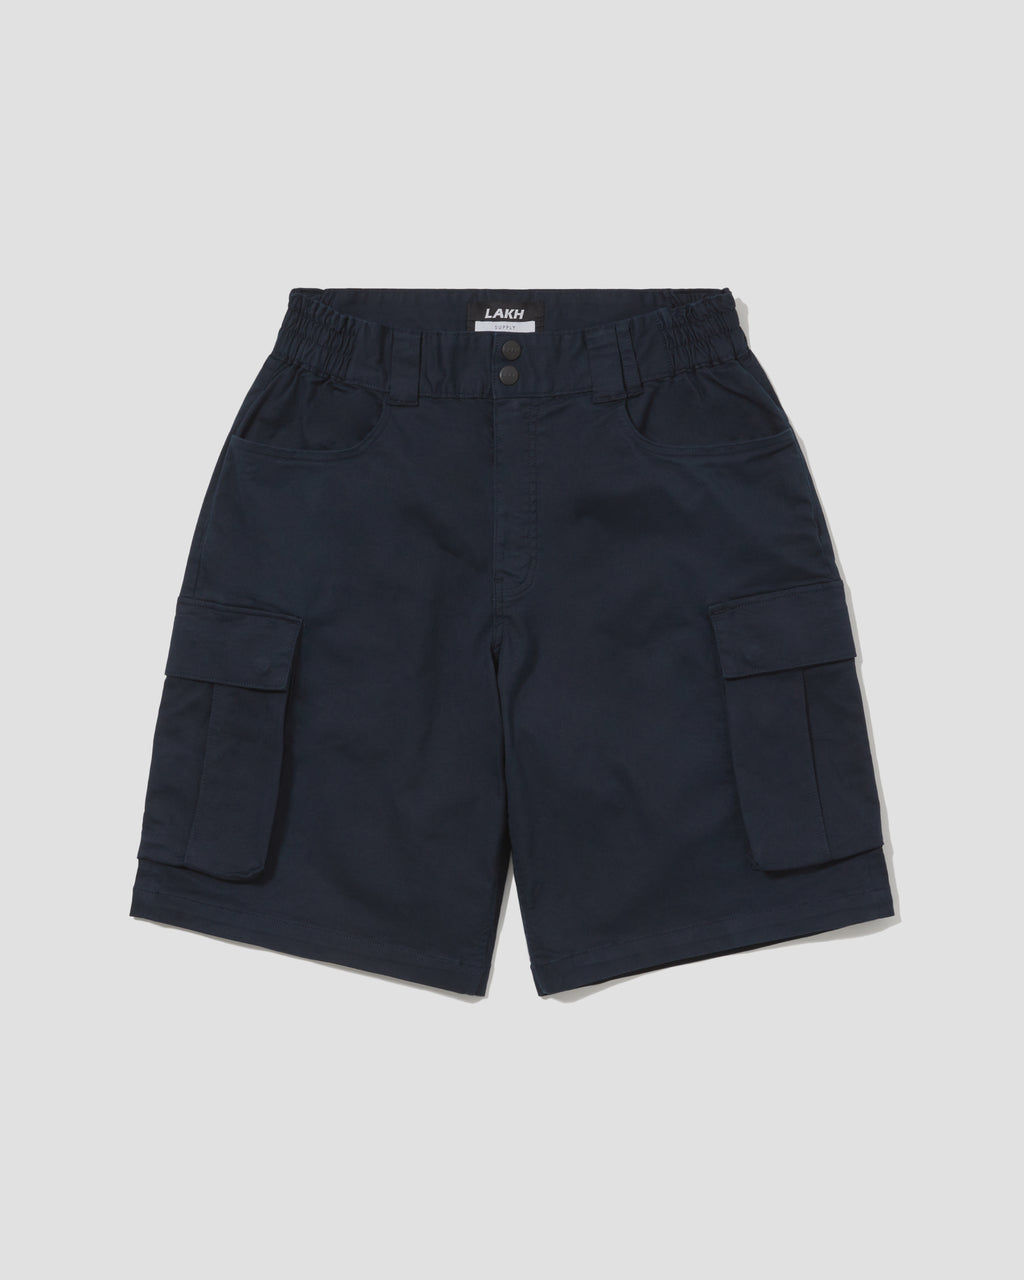 Regular Cargo Shorts - Navy